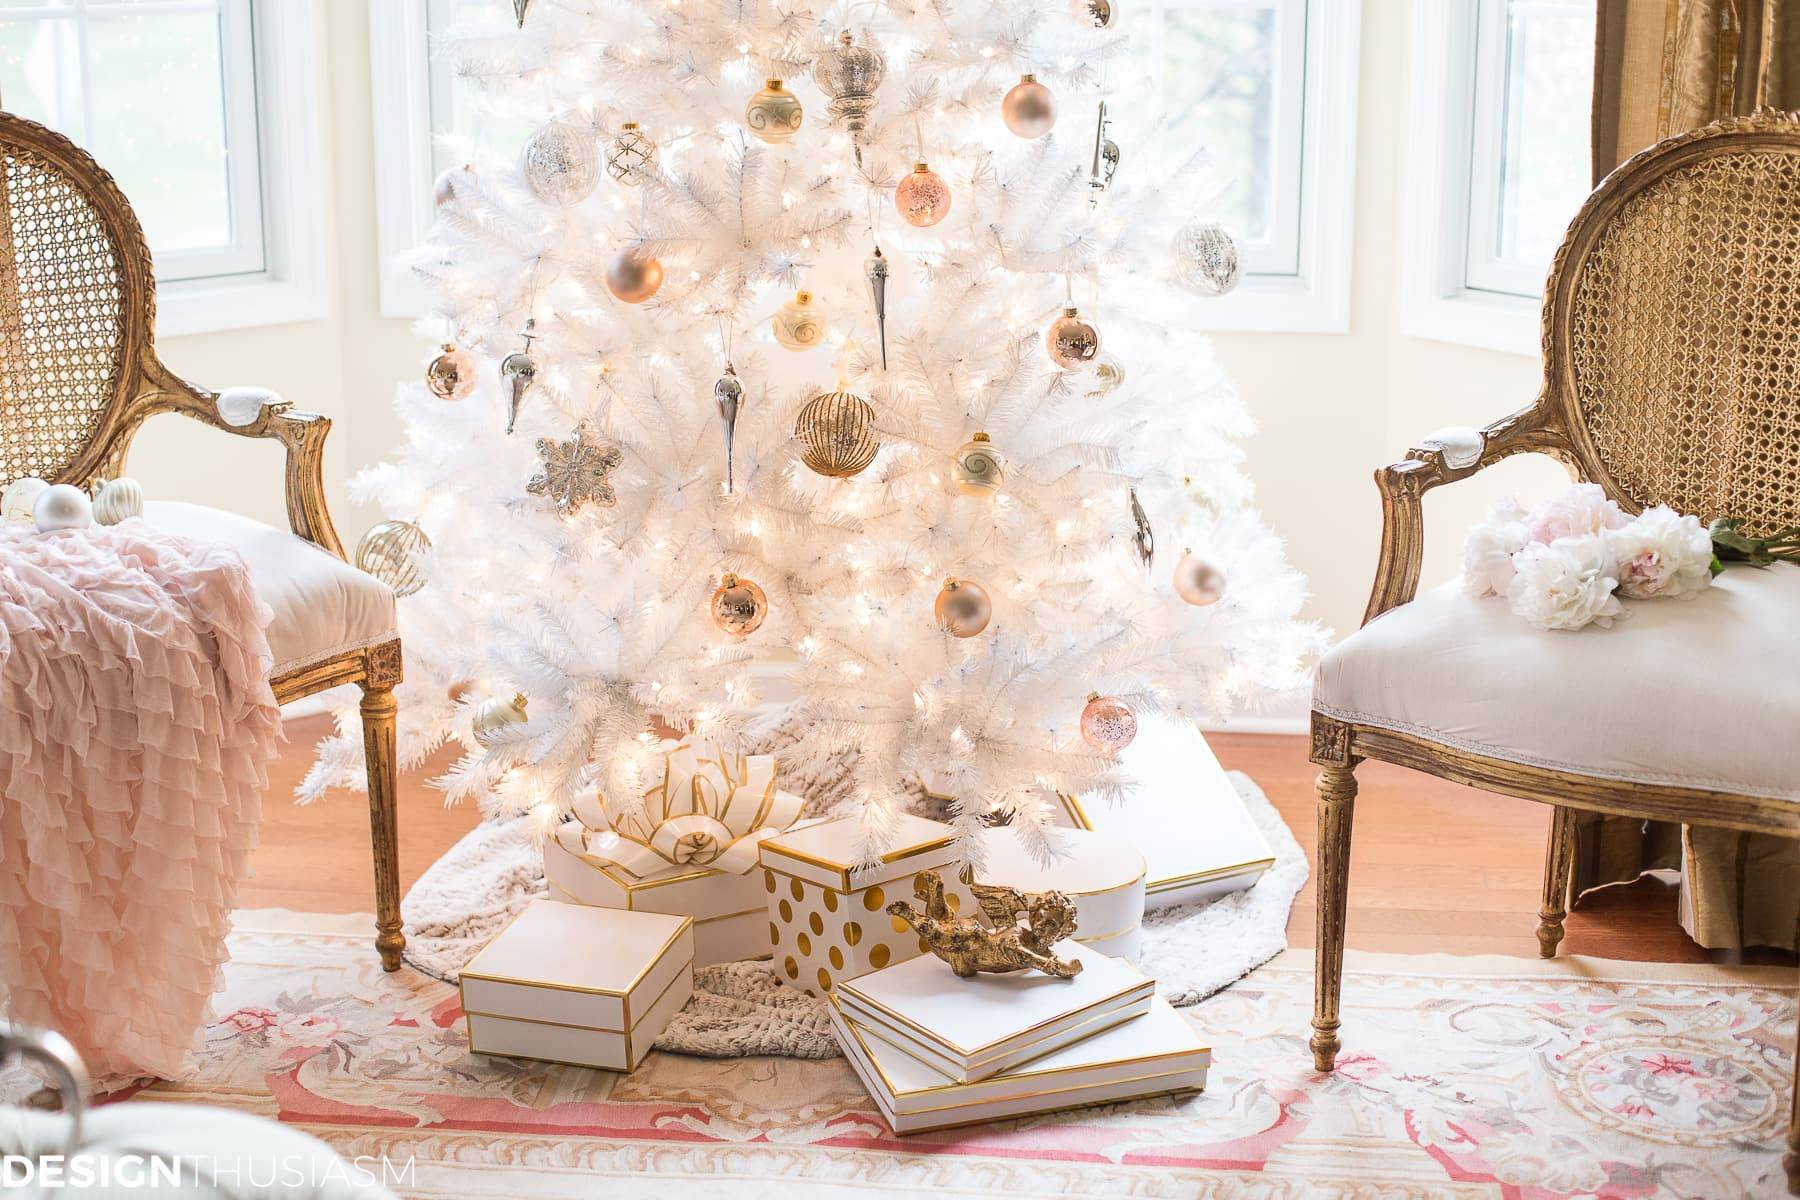 Рождество в стиле гламур: стильная белая елка в интерьере